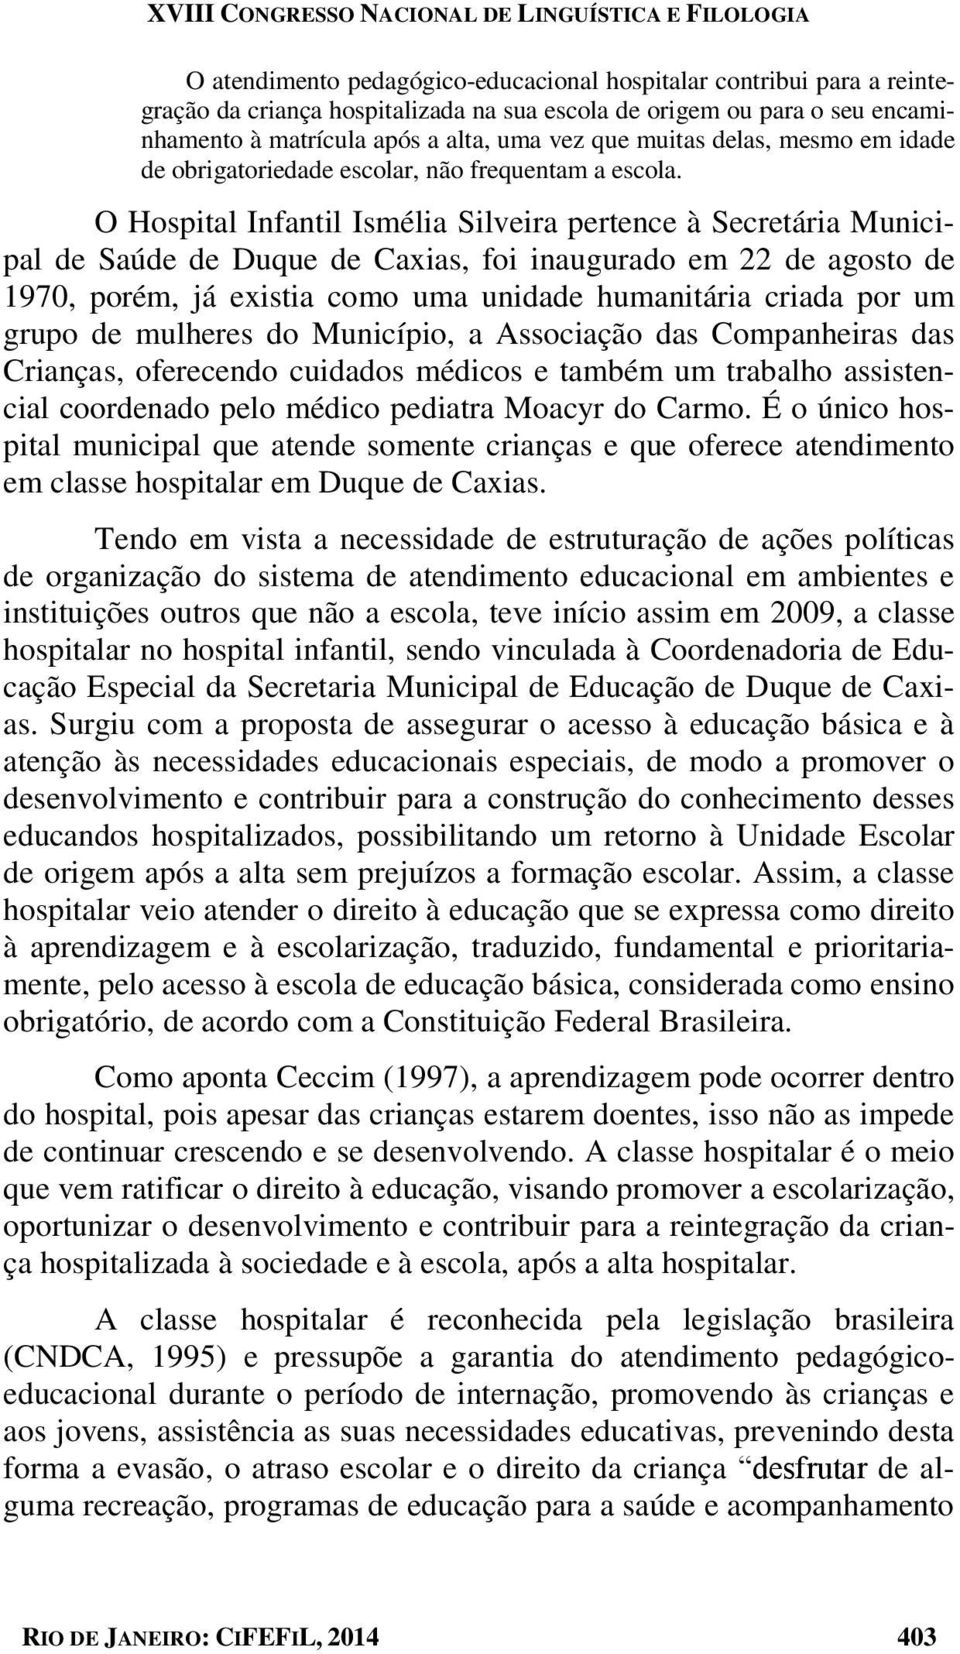 O Hospital Infantil Ismélia Silveira pertence à Secretária Municipal de Saúde de Duque de Caxias, foi inaugurado em 22 de agosto de 1970, porém, já existia como uma unidade humanitária criada por um